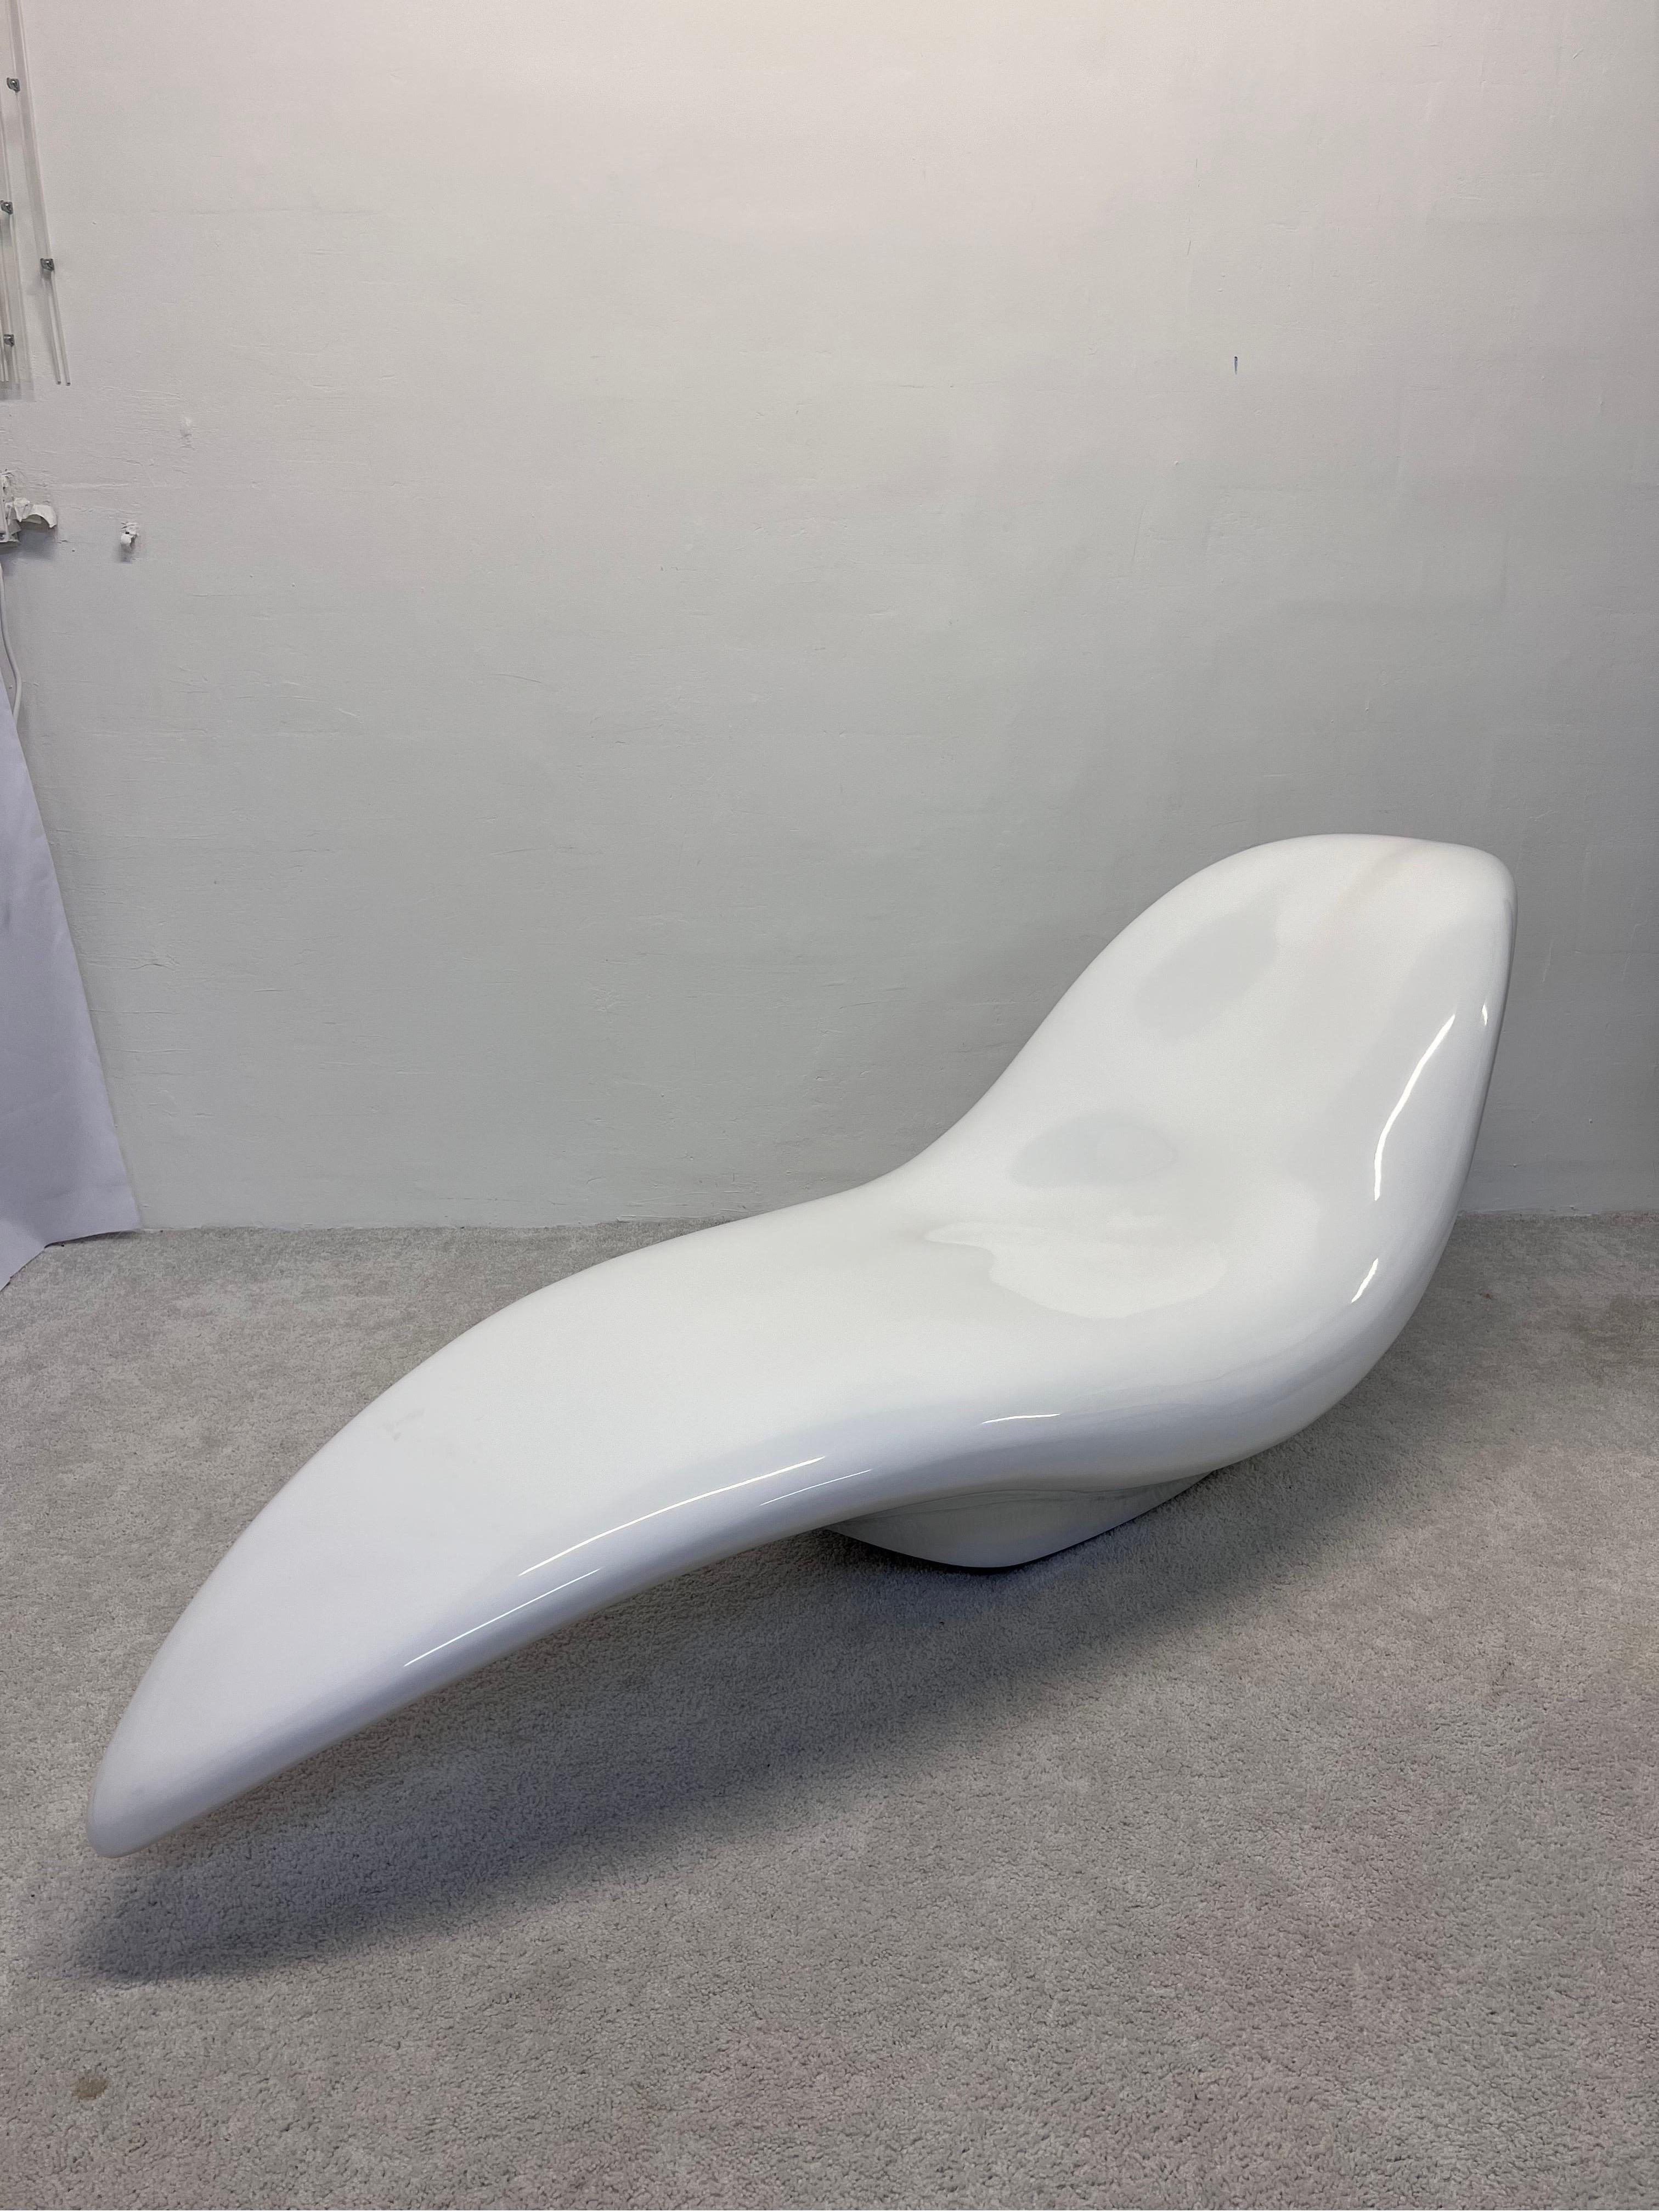 Chaise Ghost CedriMartini en blanc laqué brillant.

La Chaise Longue Ghost de CedriMartini présente un design italien moderne. Cette chaise longue pivotante se caractérise par une forme fluide et organique qui lui confère un aspect futuriste et